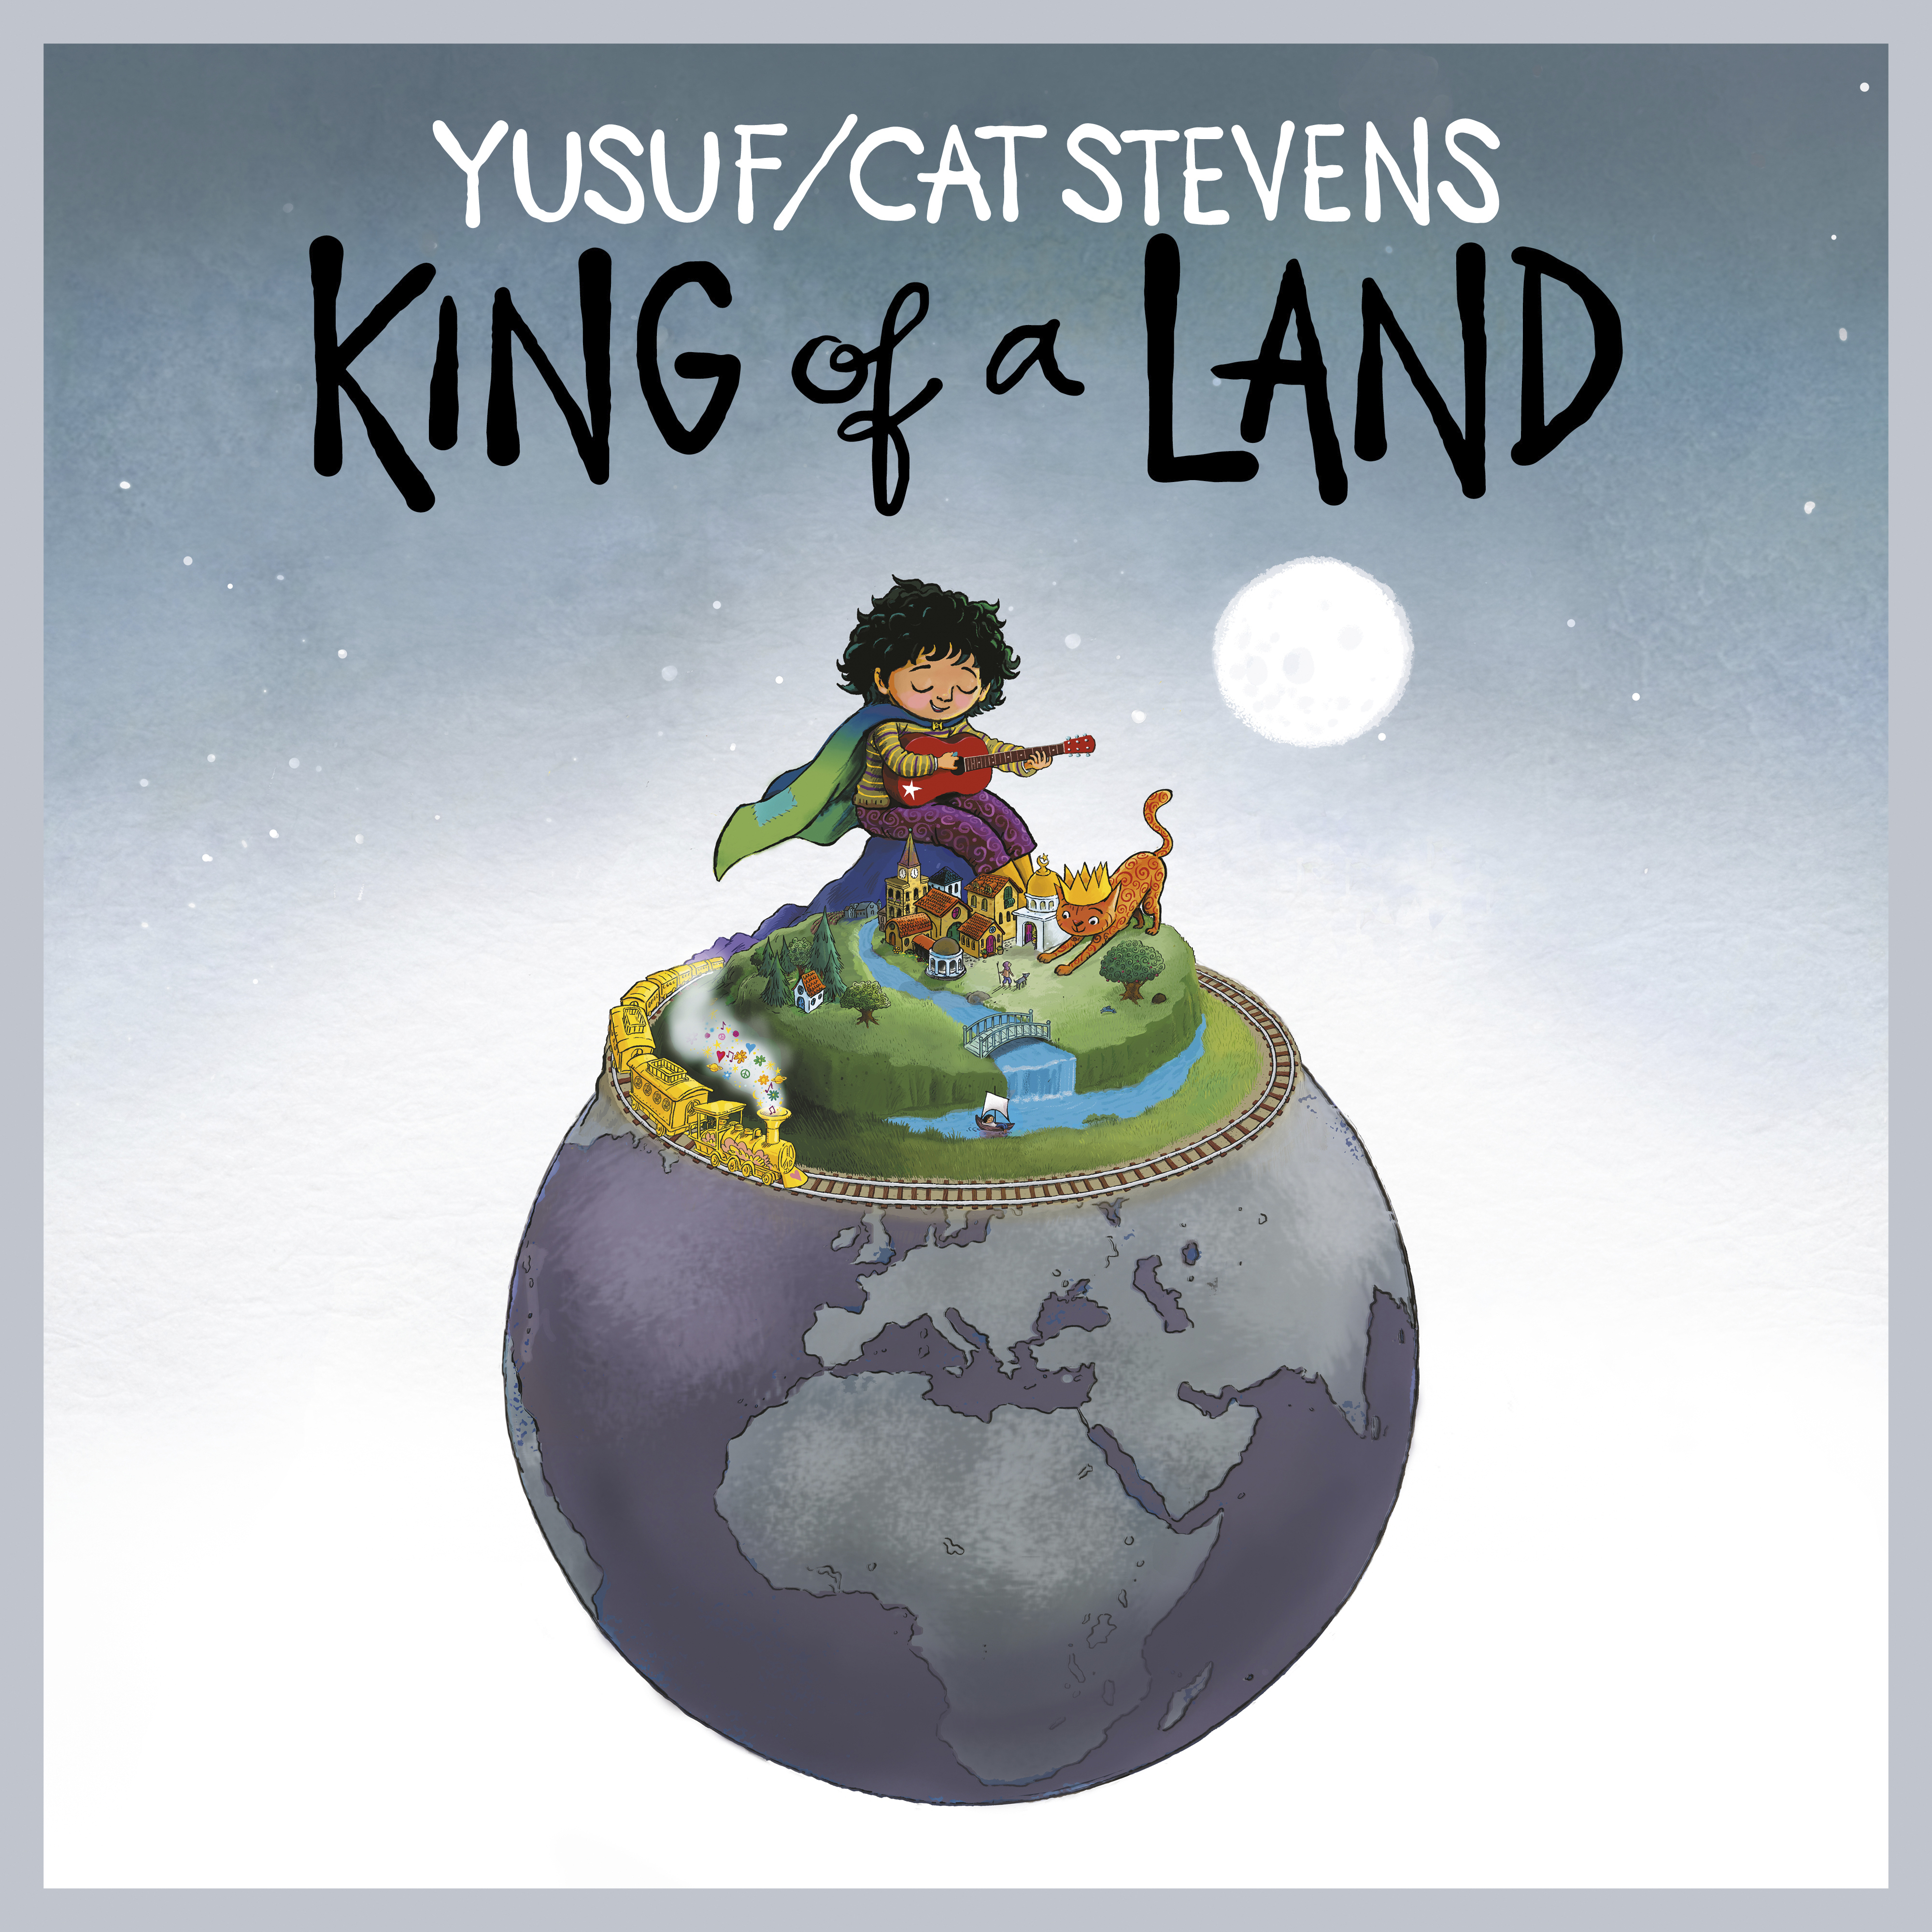 Esta imagen, divulgada por el sello discográfico Dark Horse Records, es la portada del disco de 12 canciones de Yusuf/Cat Stevens llamado "King of a Land", el cual saldrá a la venta en junio. (Dark Horse Records vía AP)